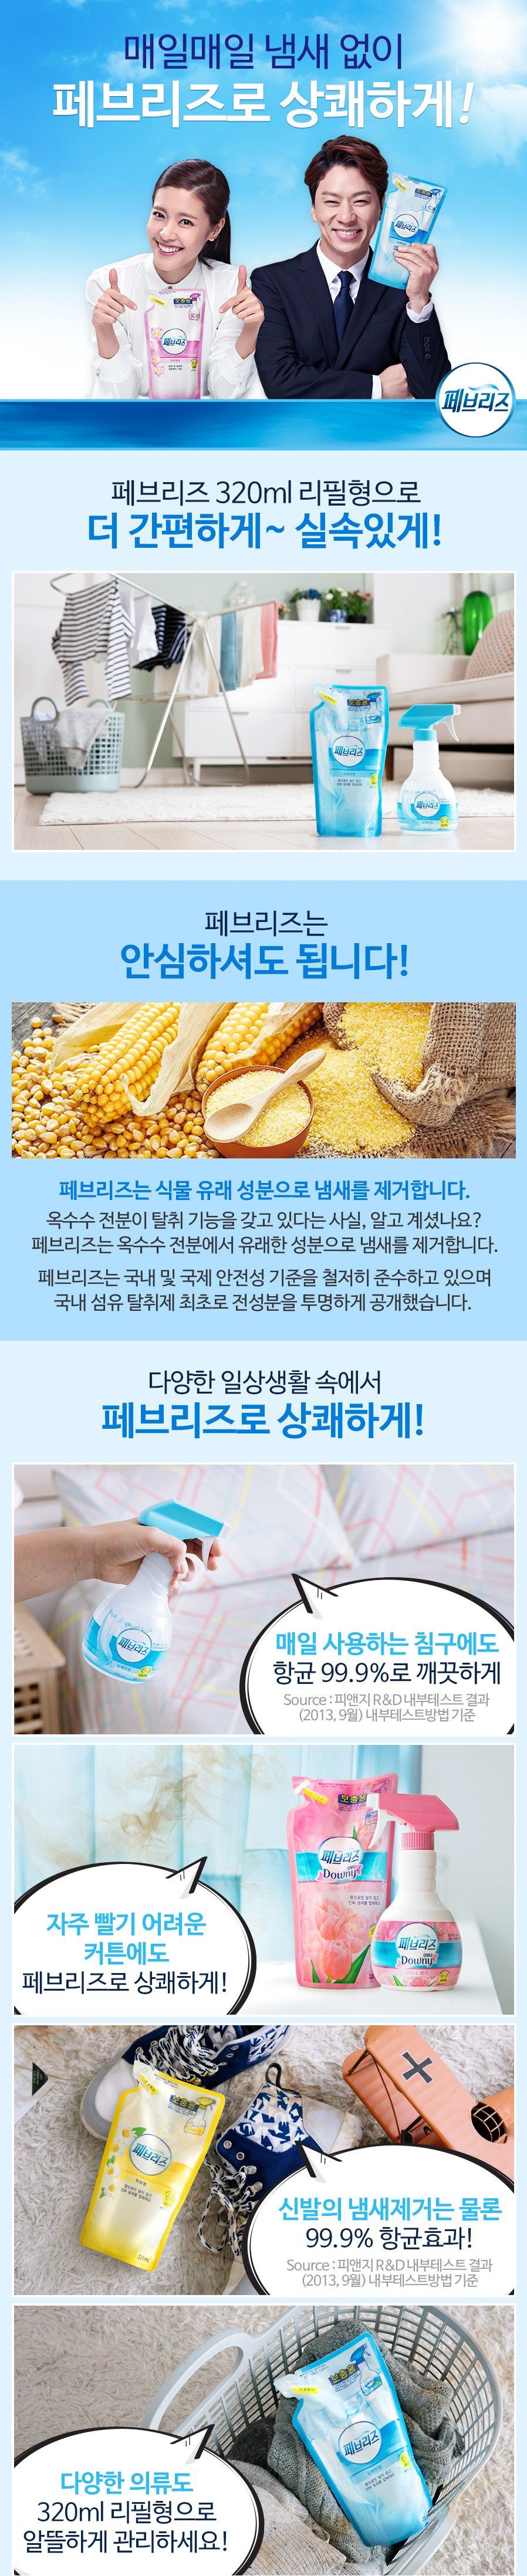 韓國食品-[P&G] 清新香氣噴霧補充[棉花] 320ml